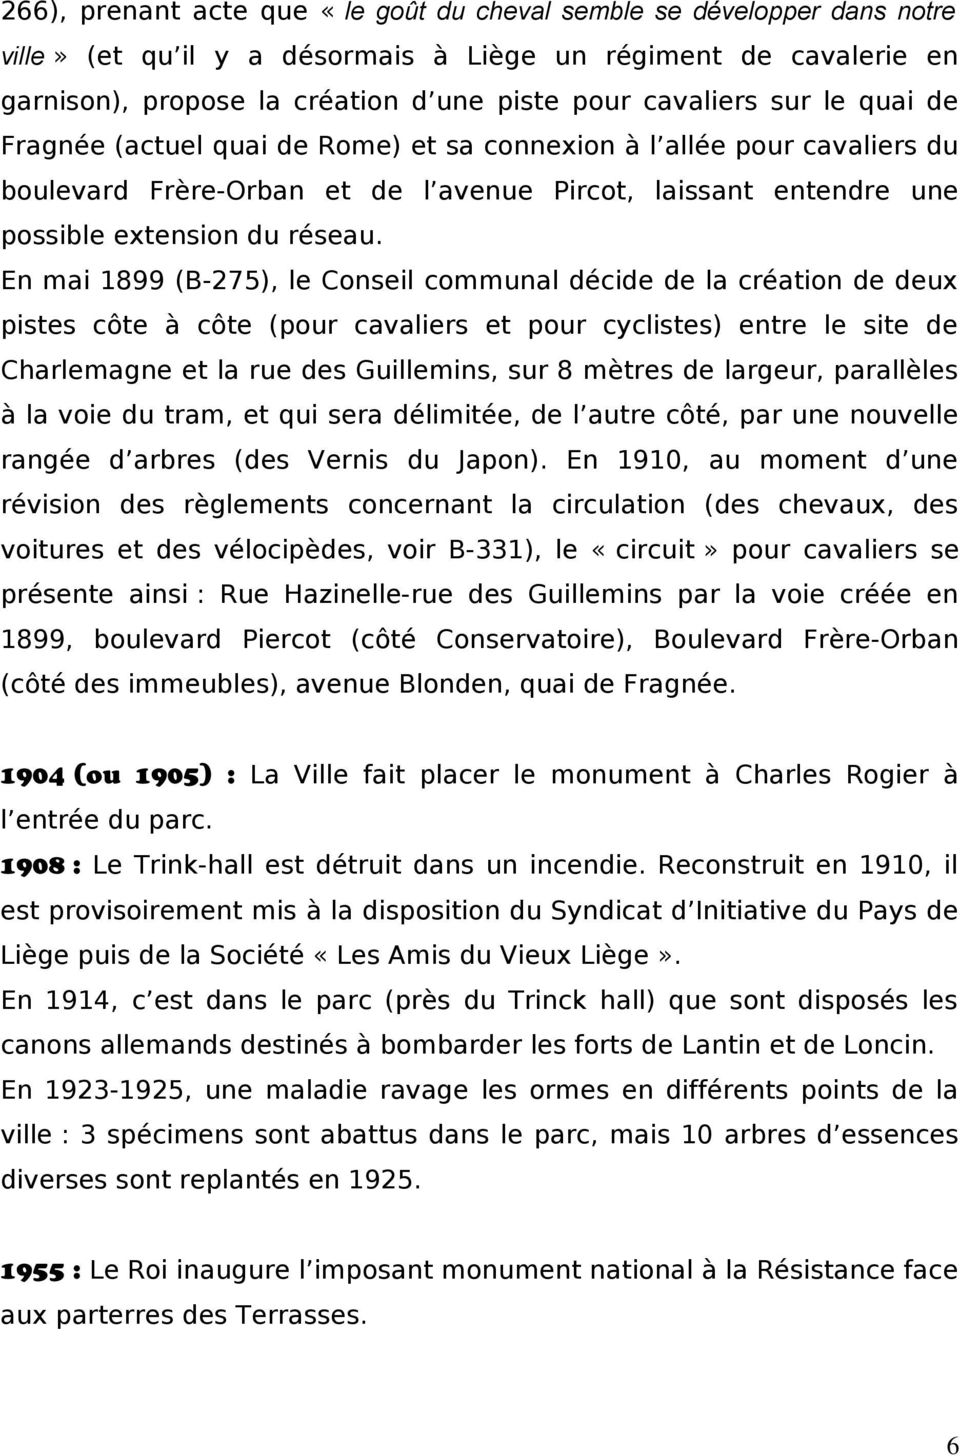 En mai 1899 (B-275), le Conseil communal décide de la création de deux pistes côte à côte (pour cavaliers et pour cyclistes) entre le site de Charlemagne et la rue des Guillemins, sur 8 mètres de